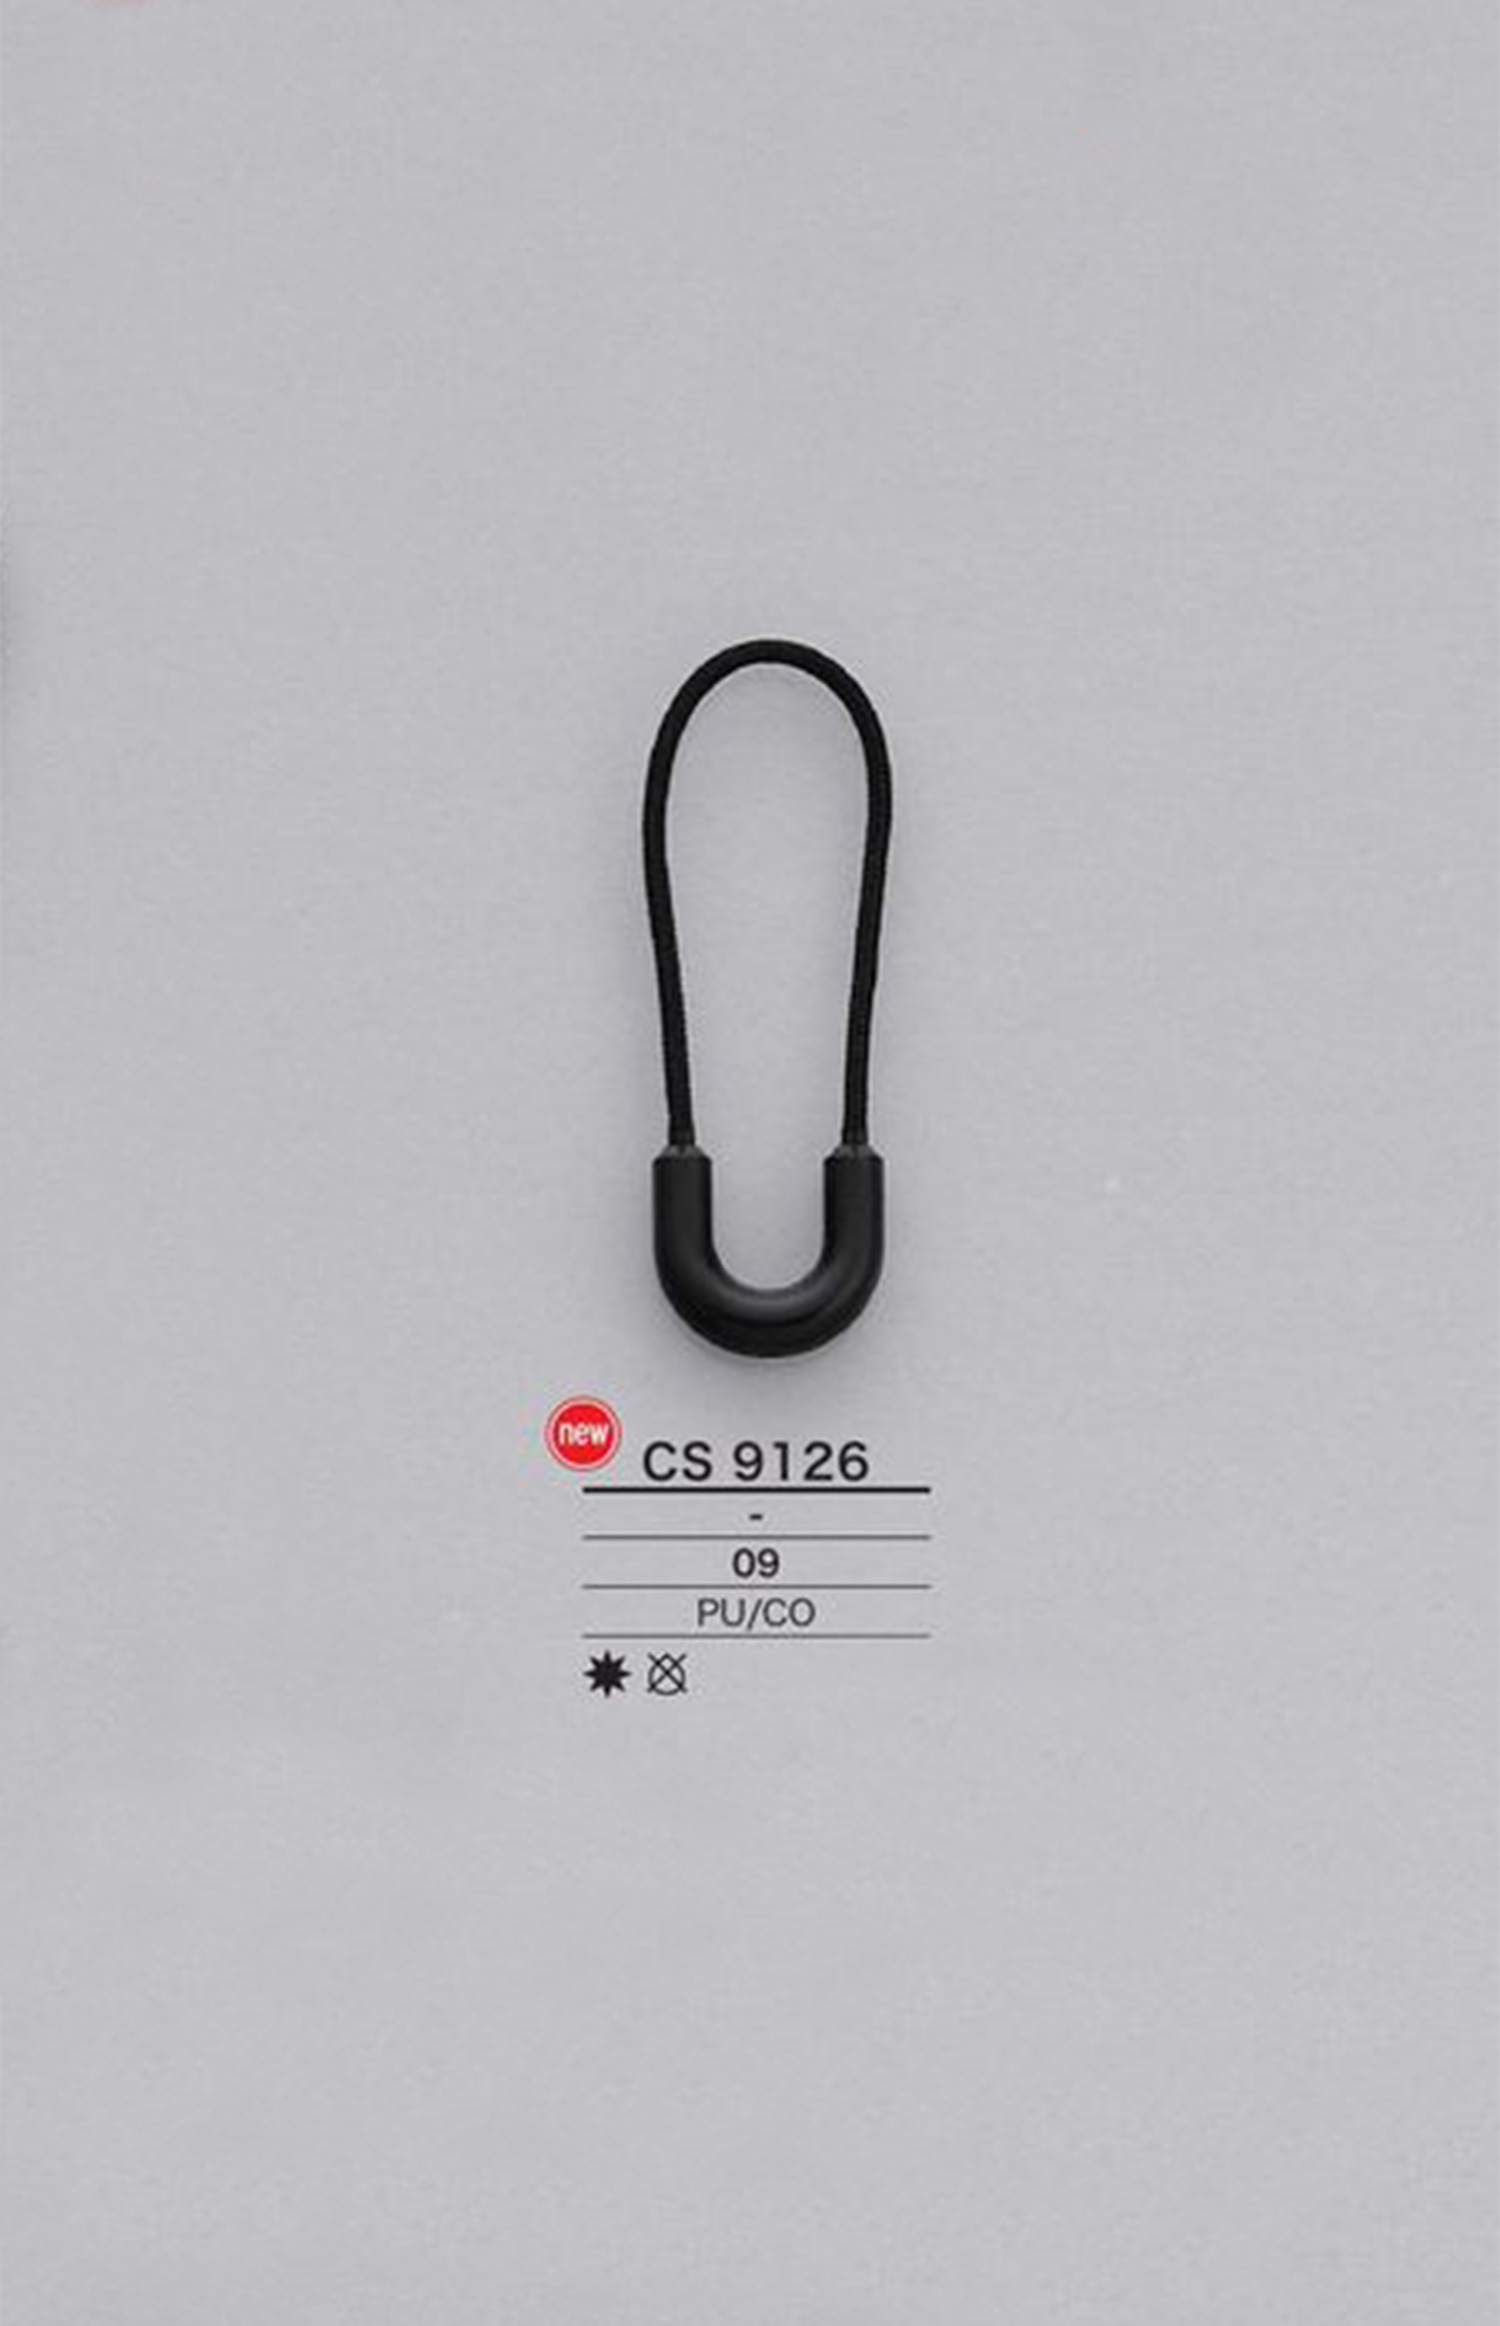 CS9126 Cord Zipper Point (Pull Tab) IRIS